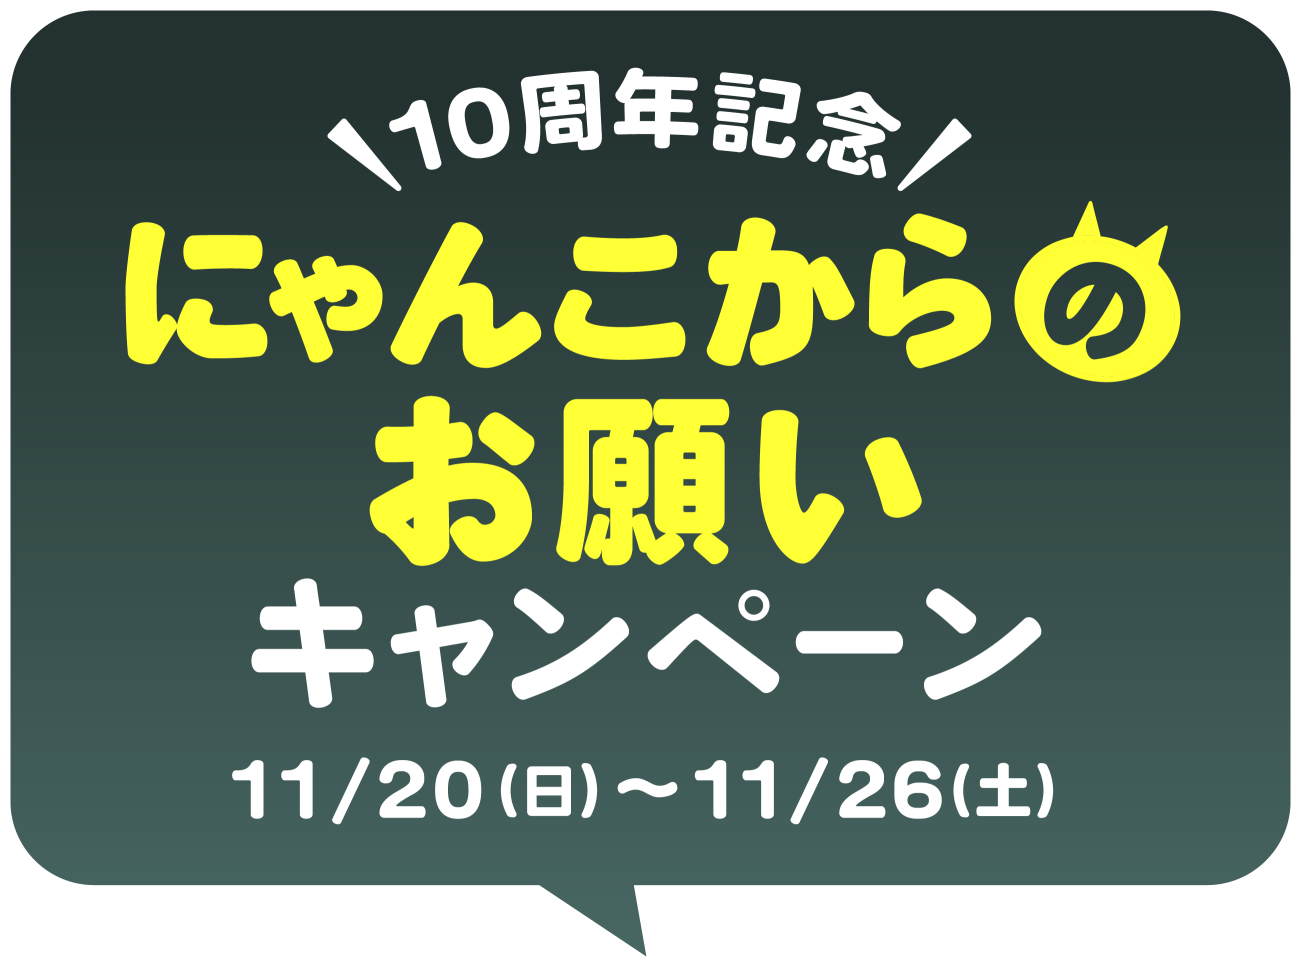 10周年記念 にゃんこからのお願いキャンペーン 11/20(日)～1/28(土)